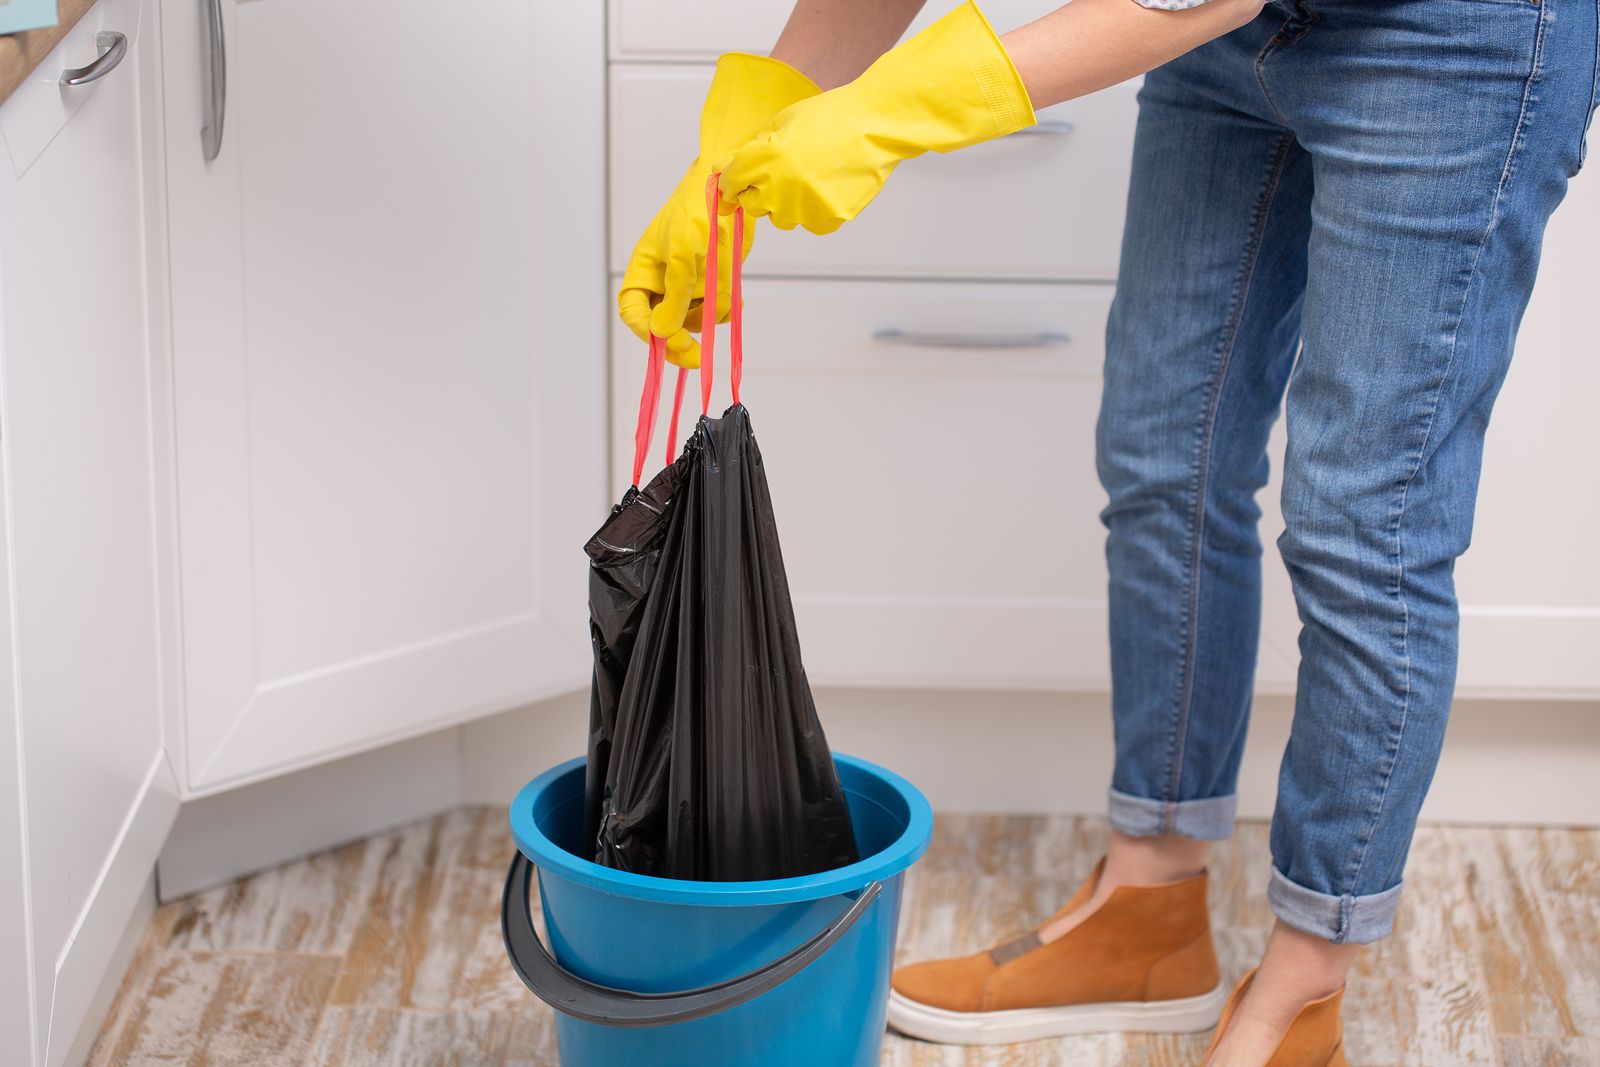 Mejores trucos para limpiar el cubo de basura: vinagre y otros